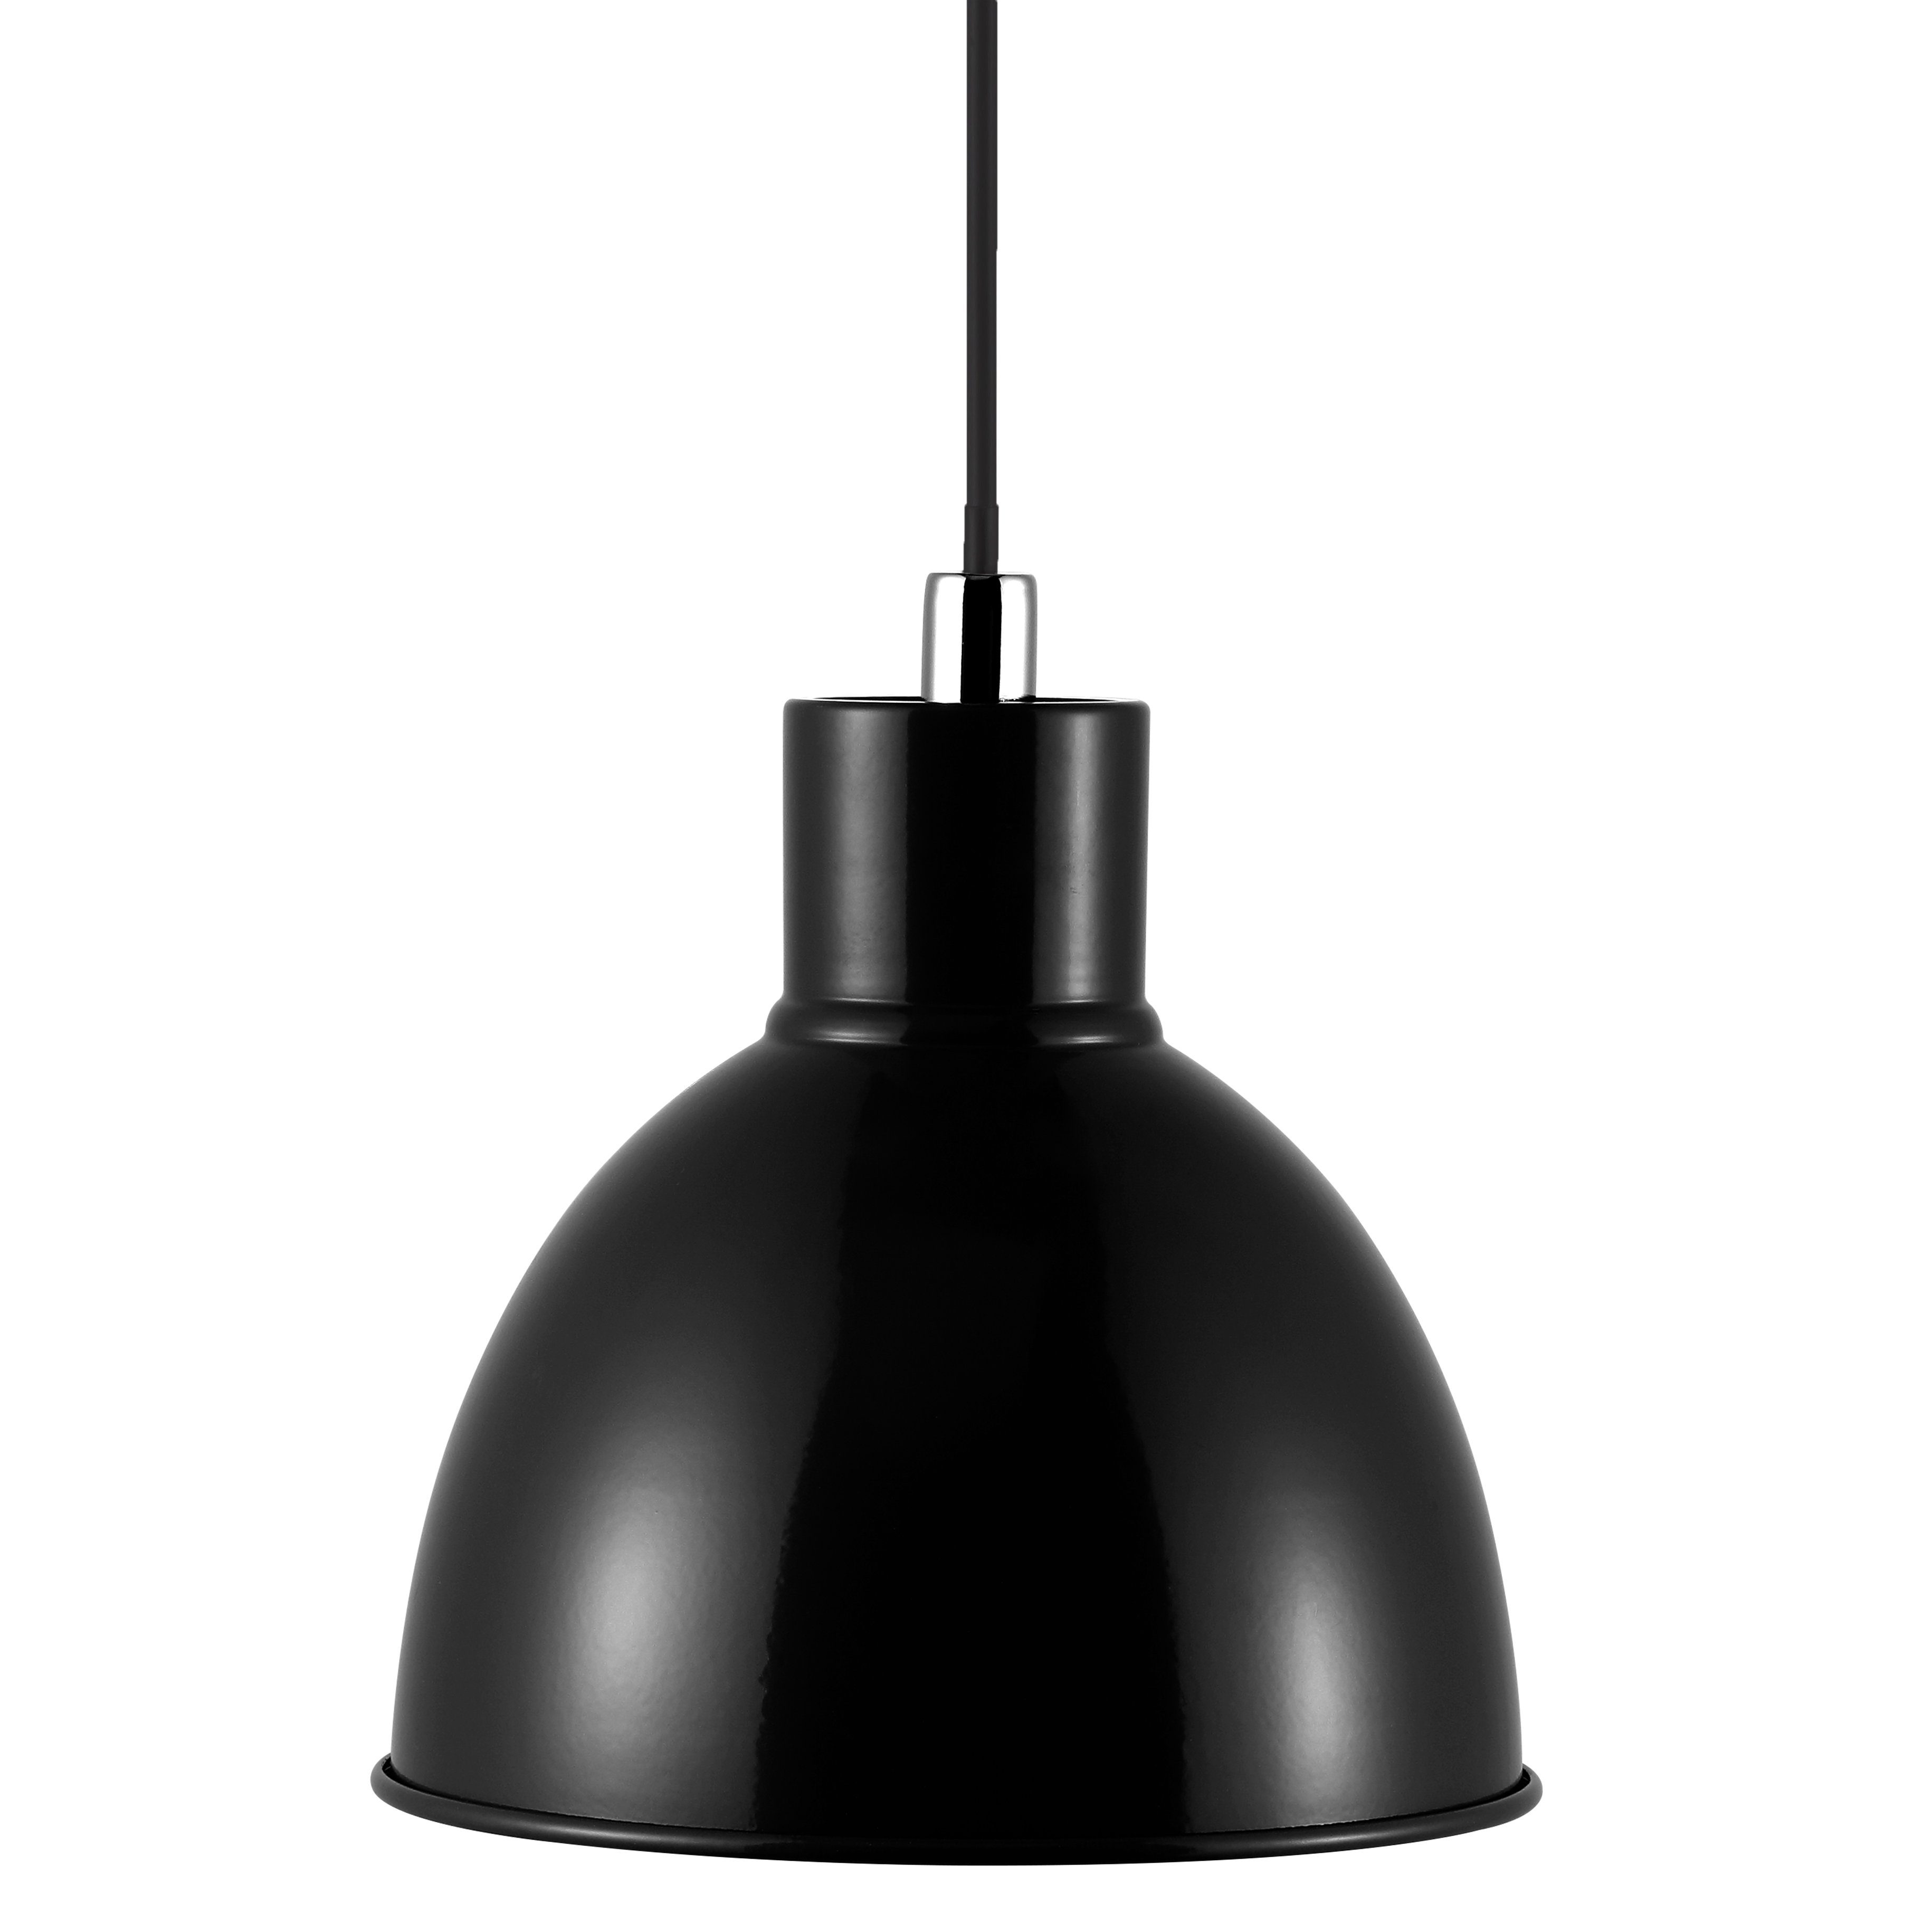 Metall E27 Nordlux Pendellampe ohne Ø21,5, Pop Hängeleuchte Leuchtmittel schwarz Pendelleuchte